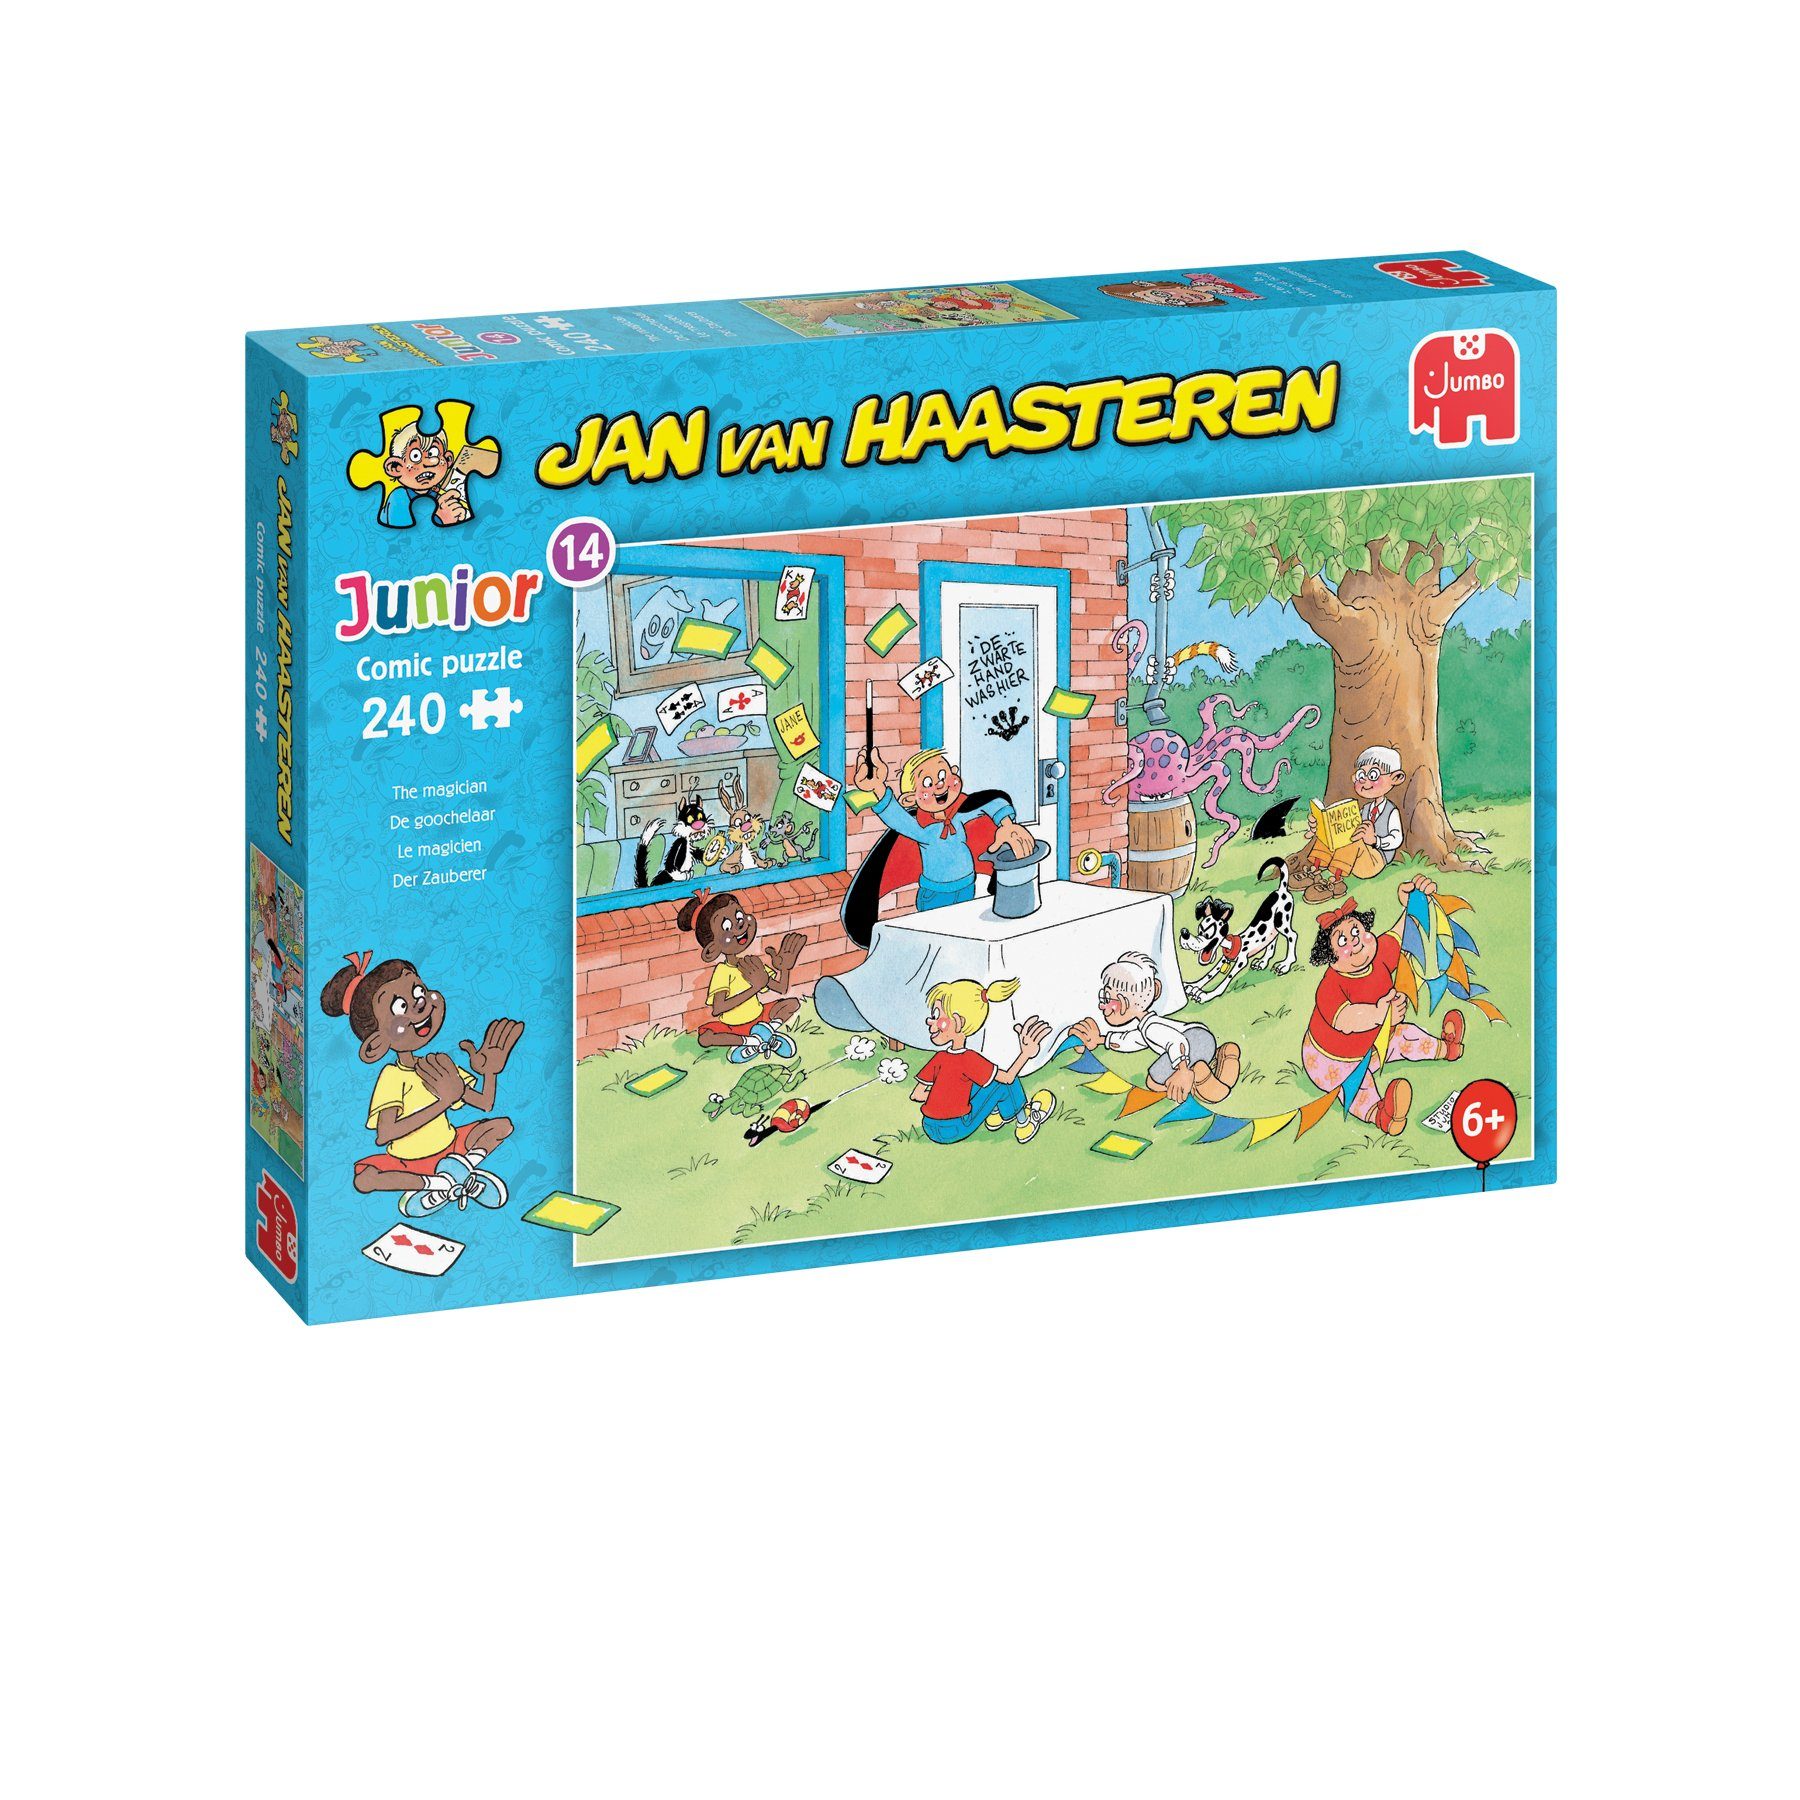 Jumbo Spiele Puzzle Jan van Haasteren Junior 14 Der Zauberer, 240 Puzzleteile, Made in Europe